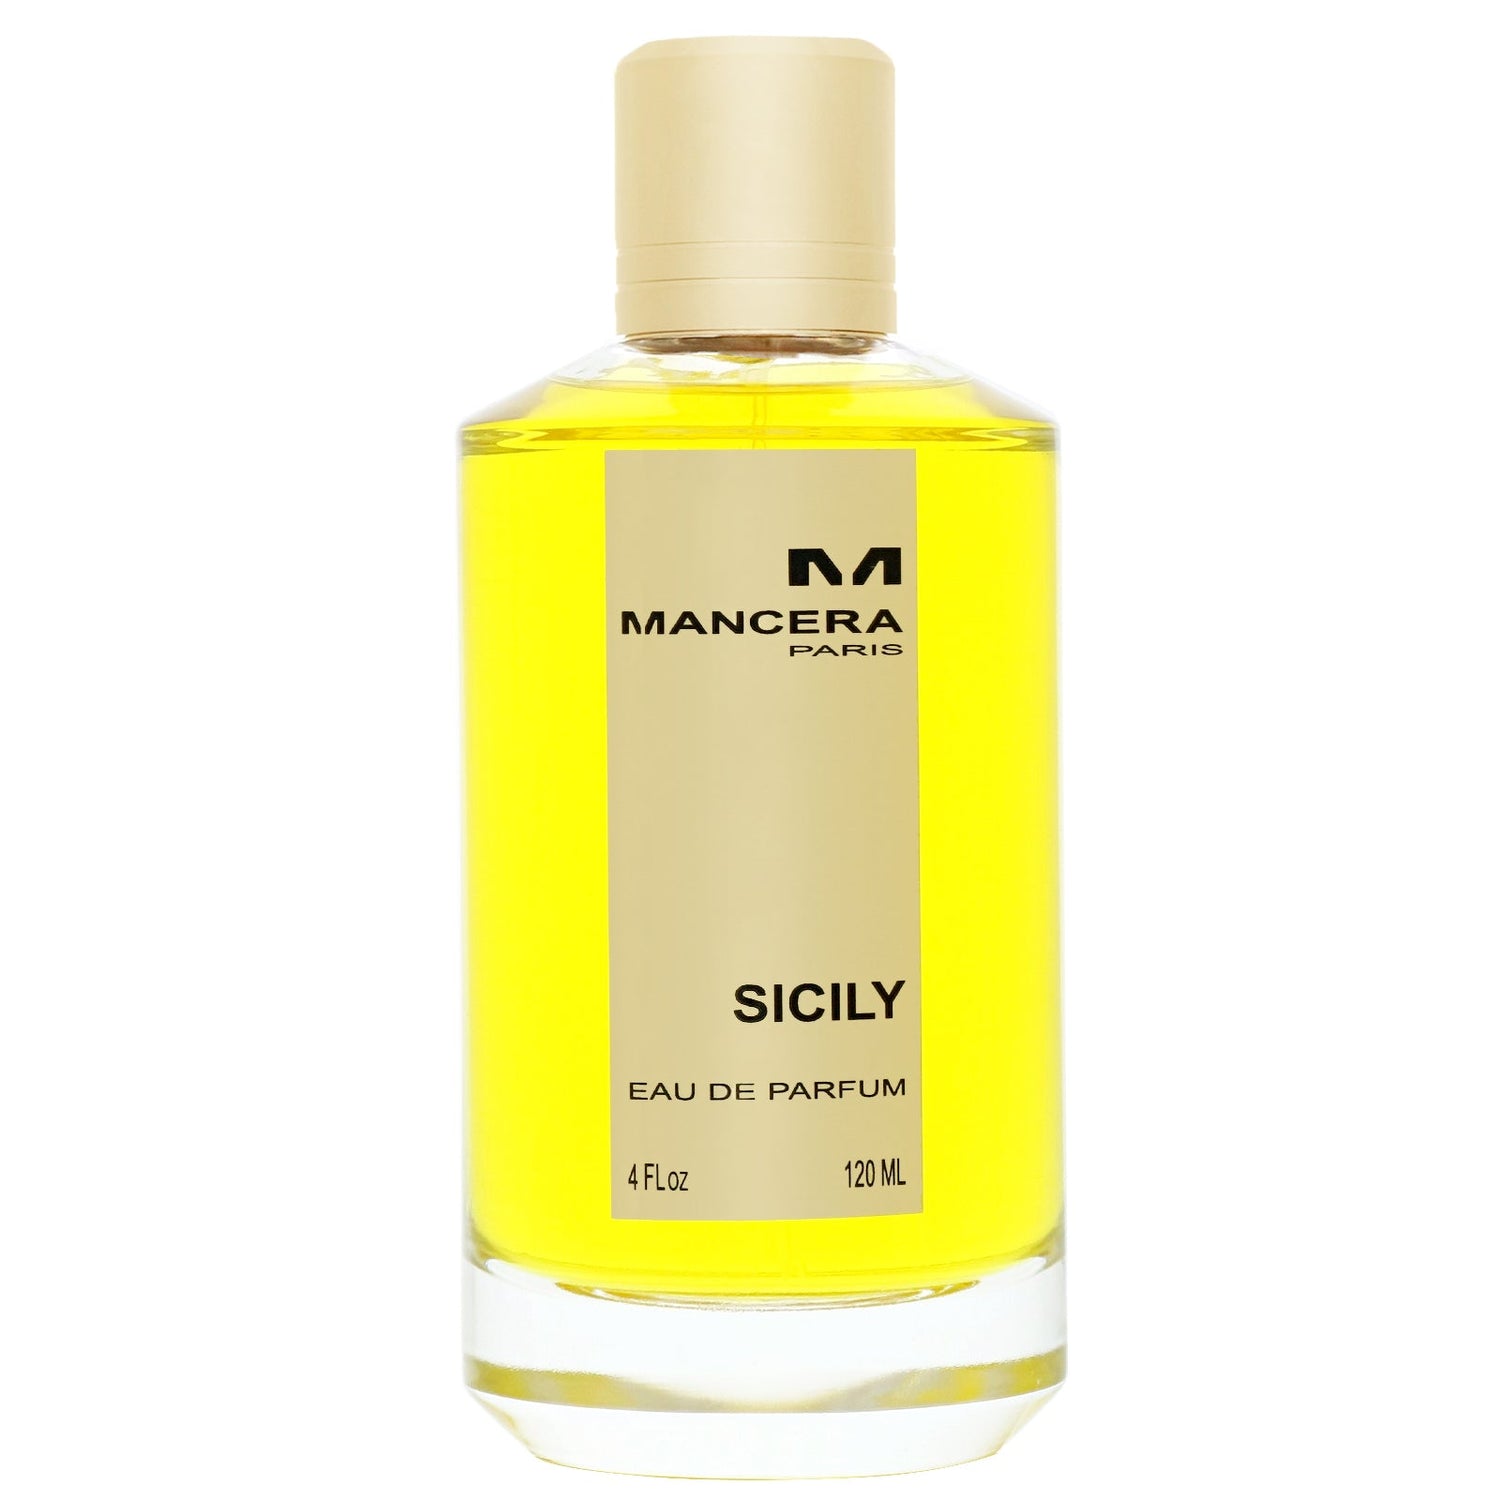 Dolce&Gabbana Sicily eau de parfum - Reviews